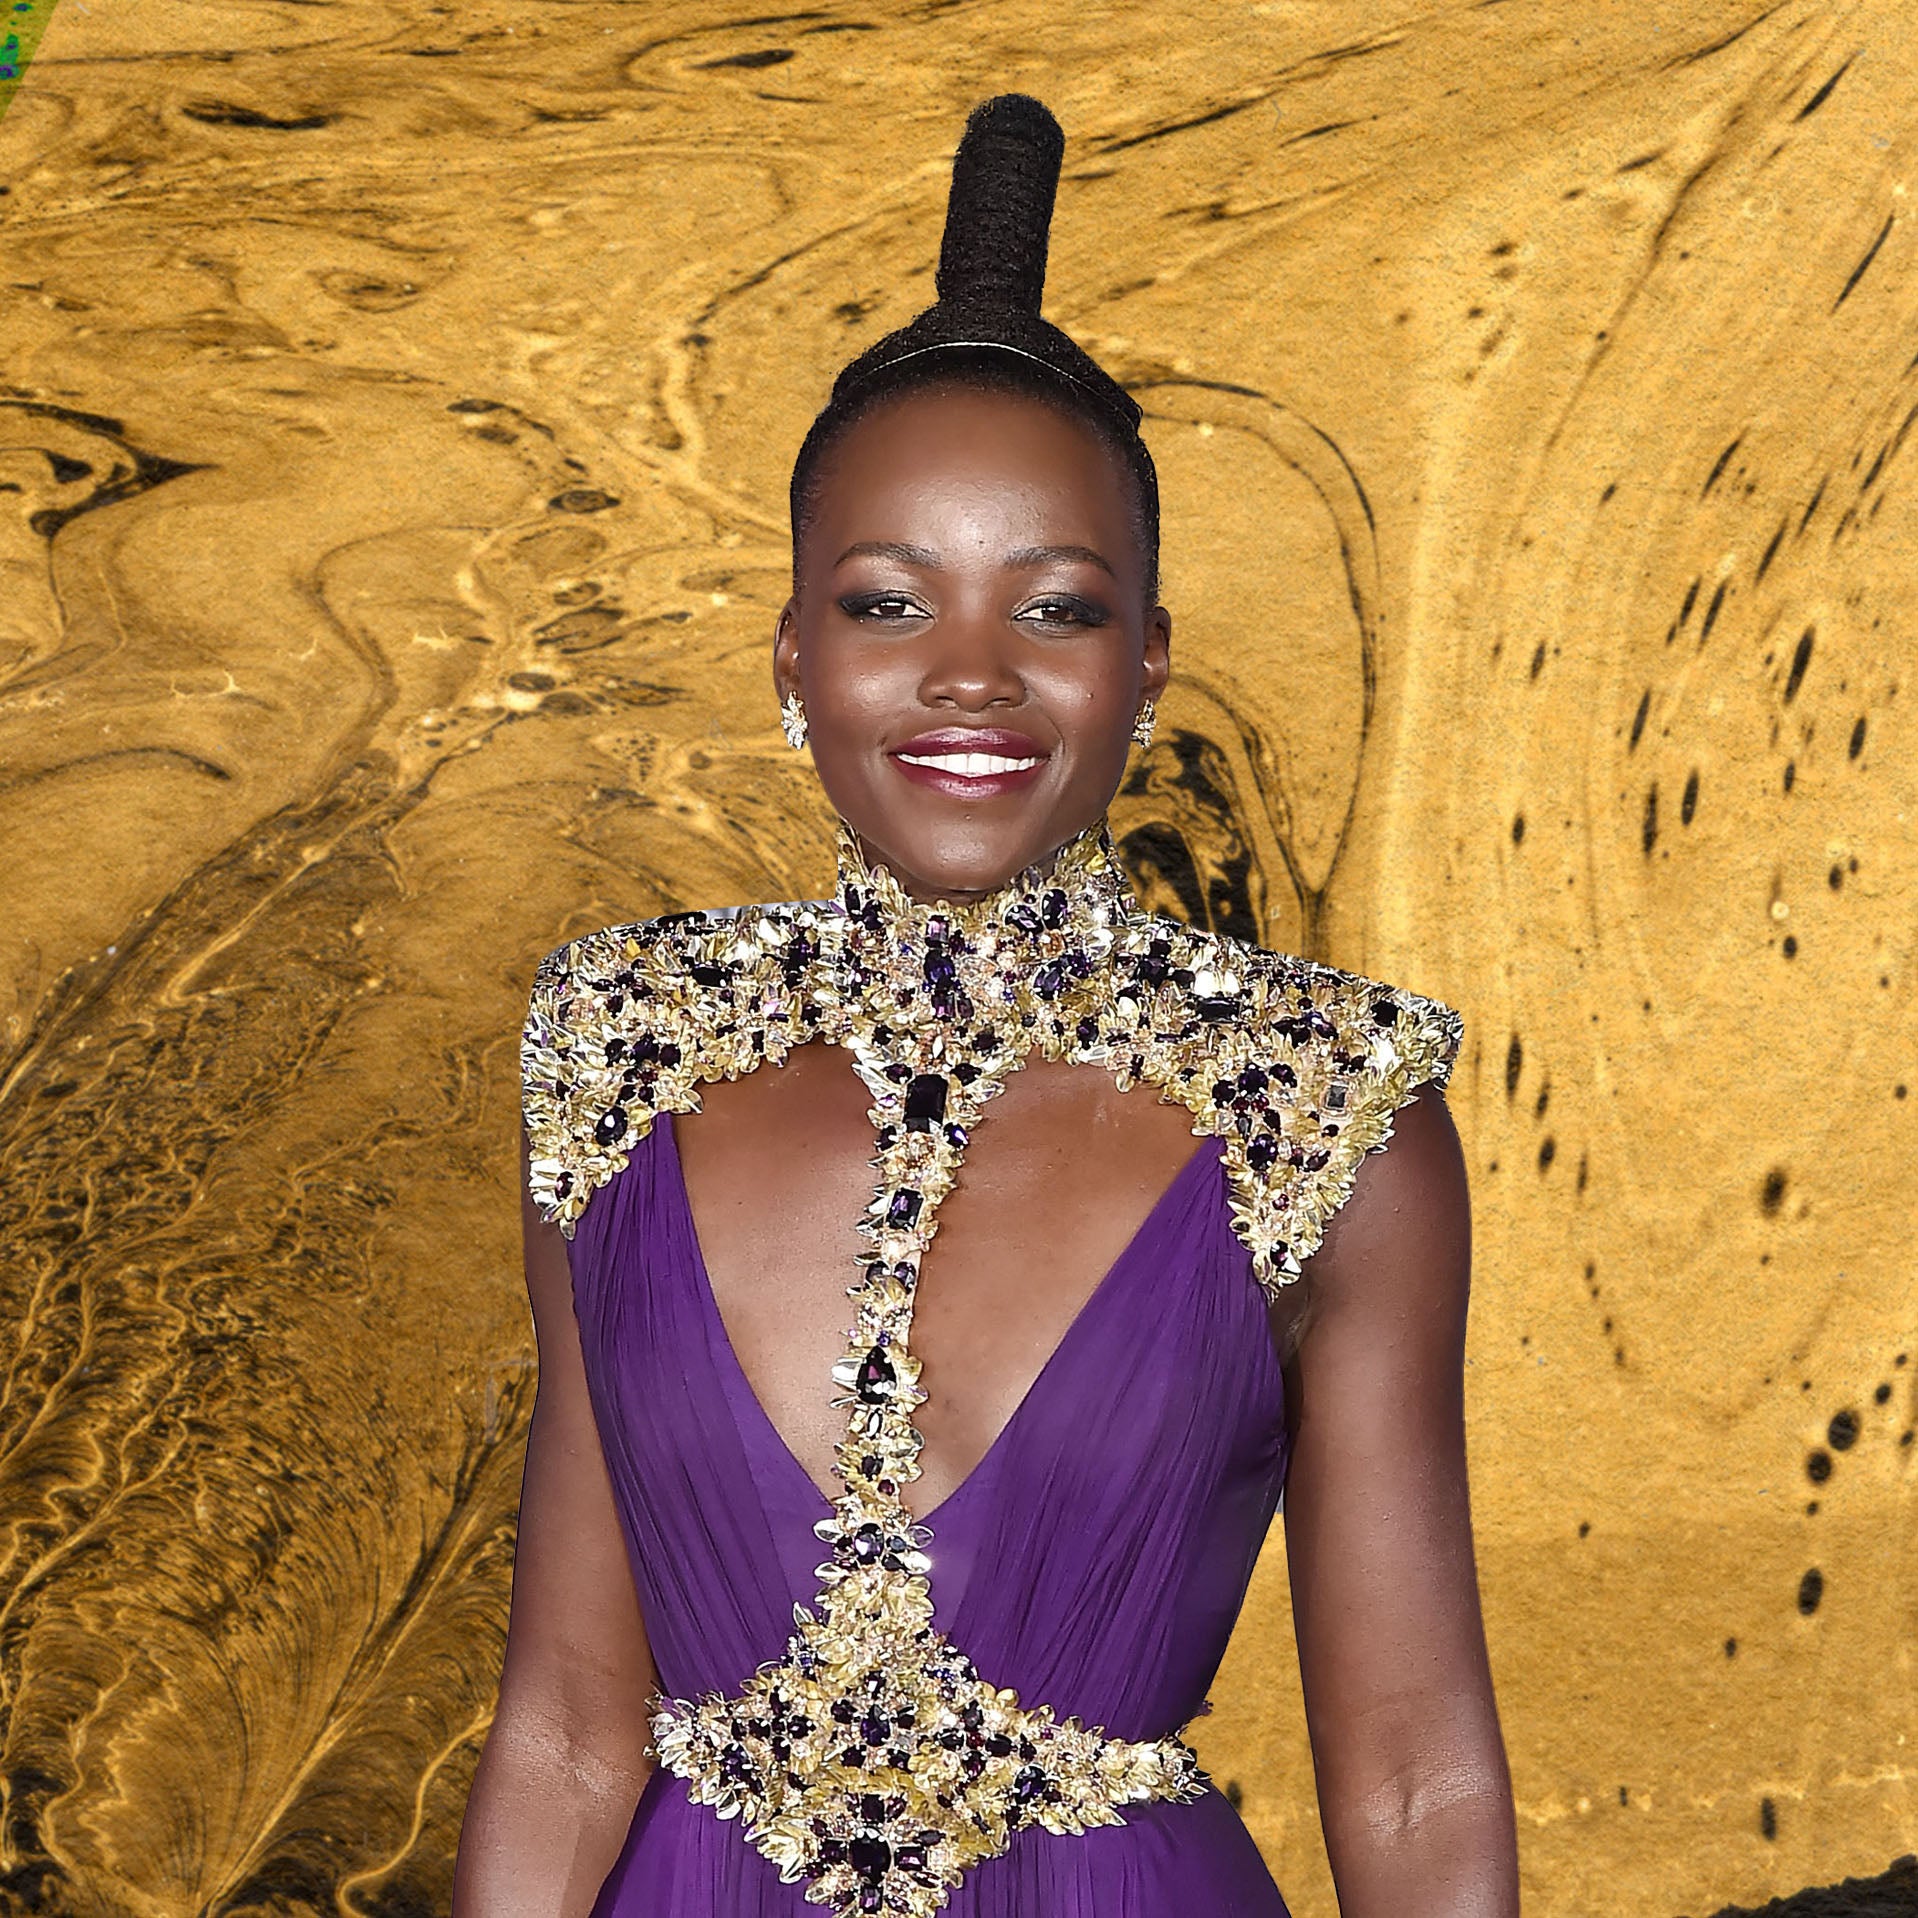 Check Out Lupita Nyong’o’s Royal Look At The 'Black Panther' Premiere
